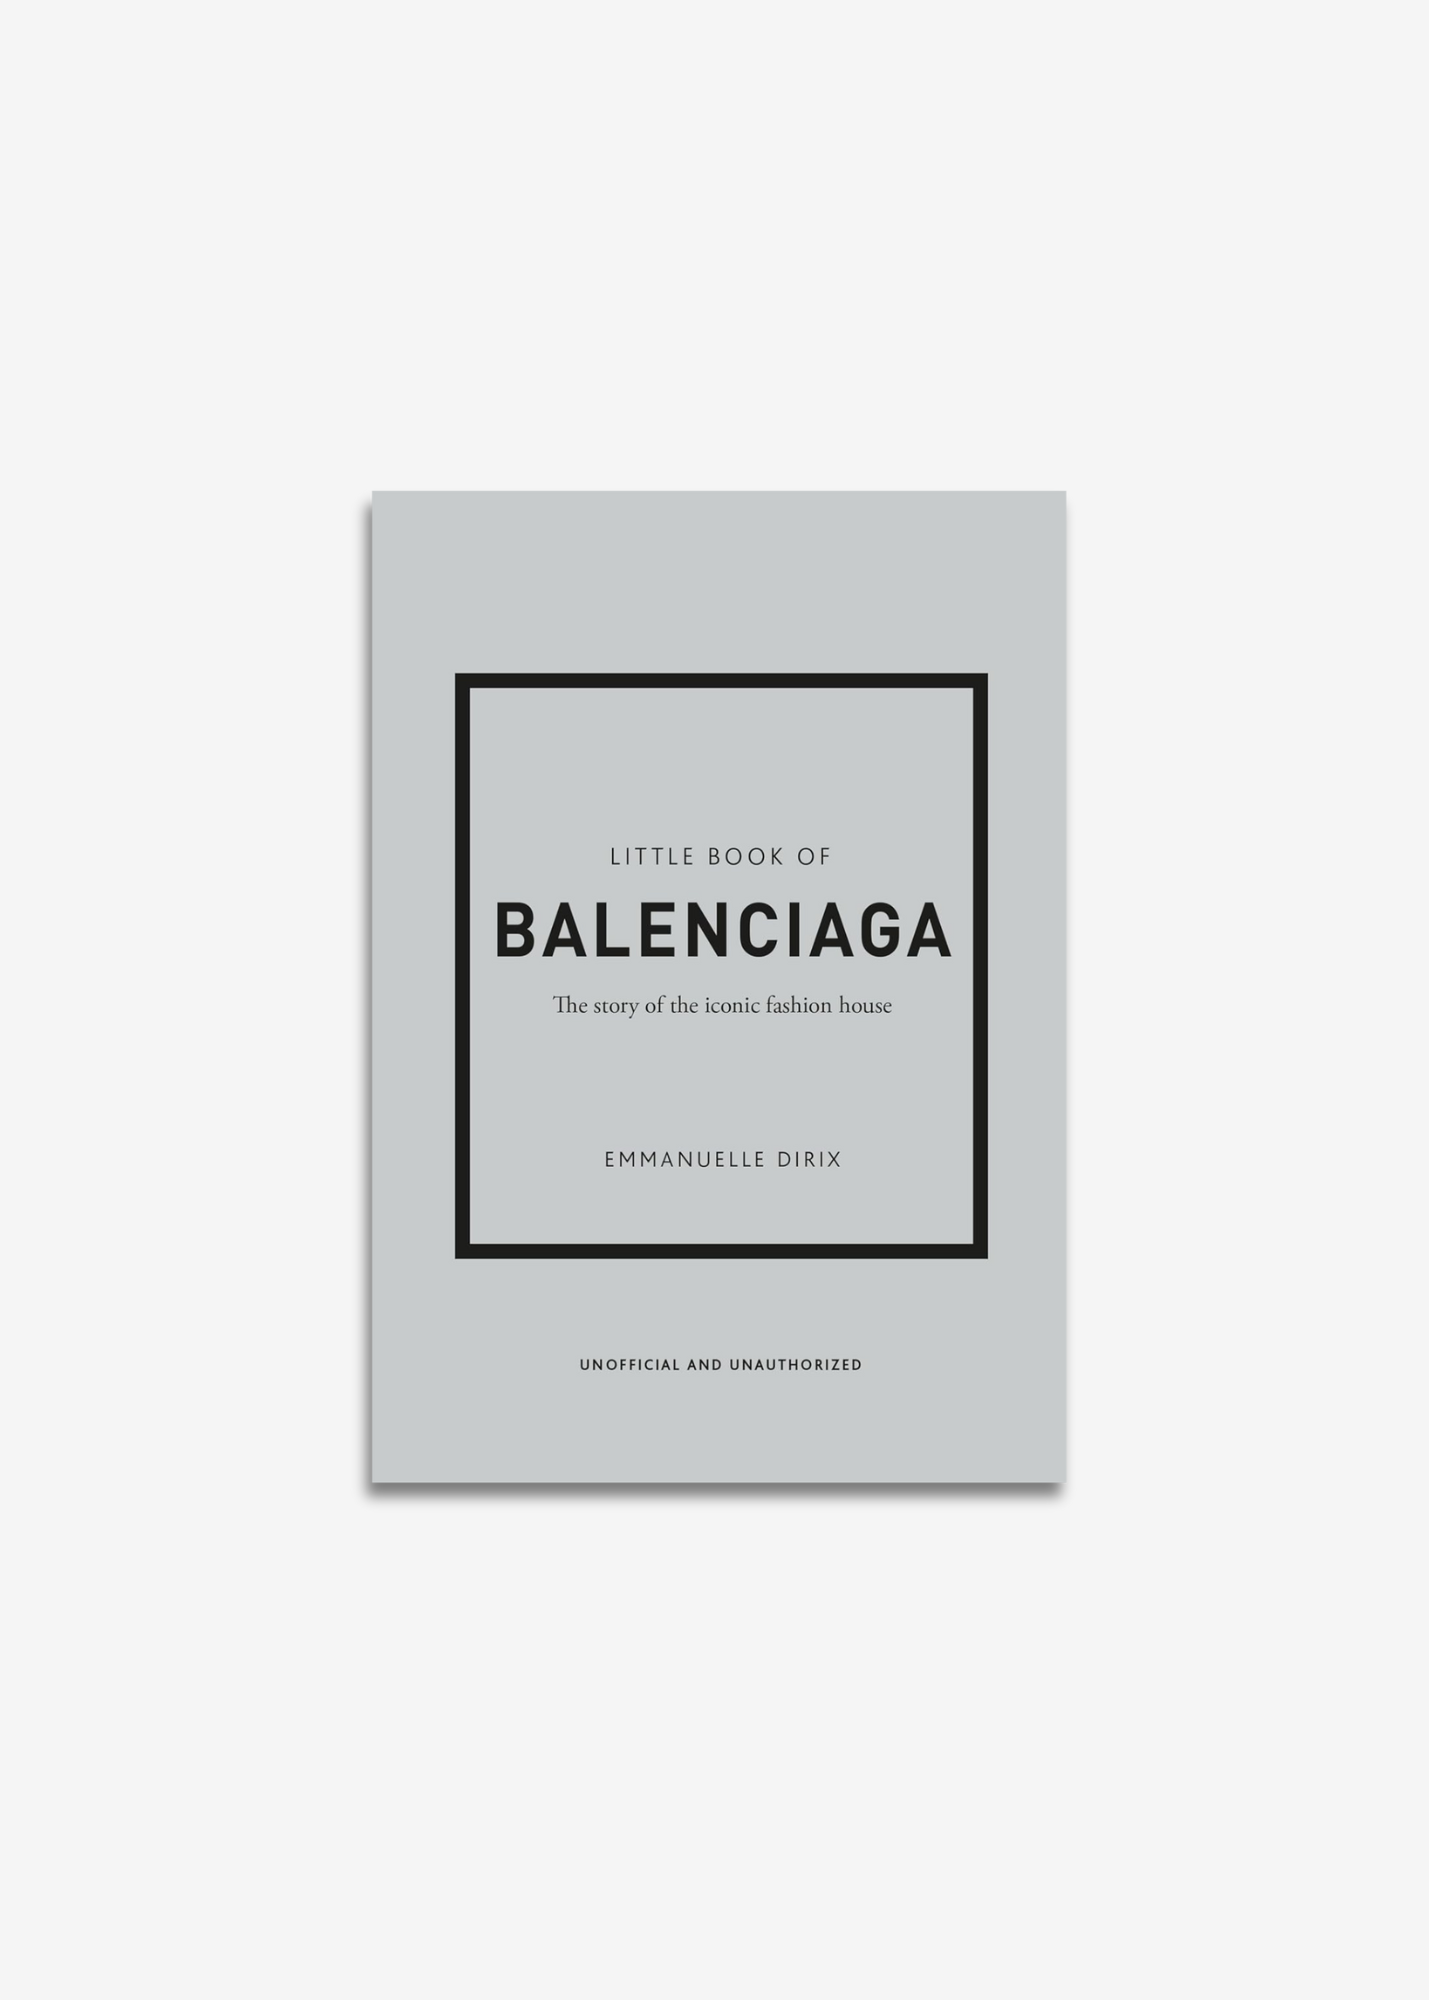 THE LITTLE BOOK OF BALENCIAGA